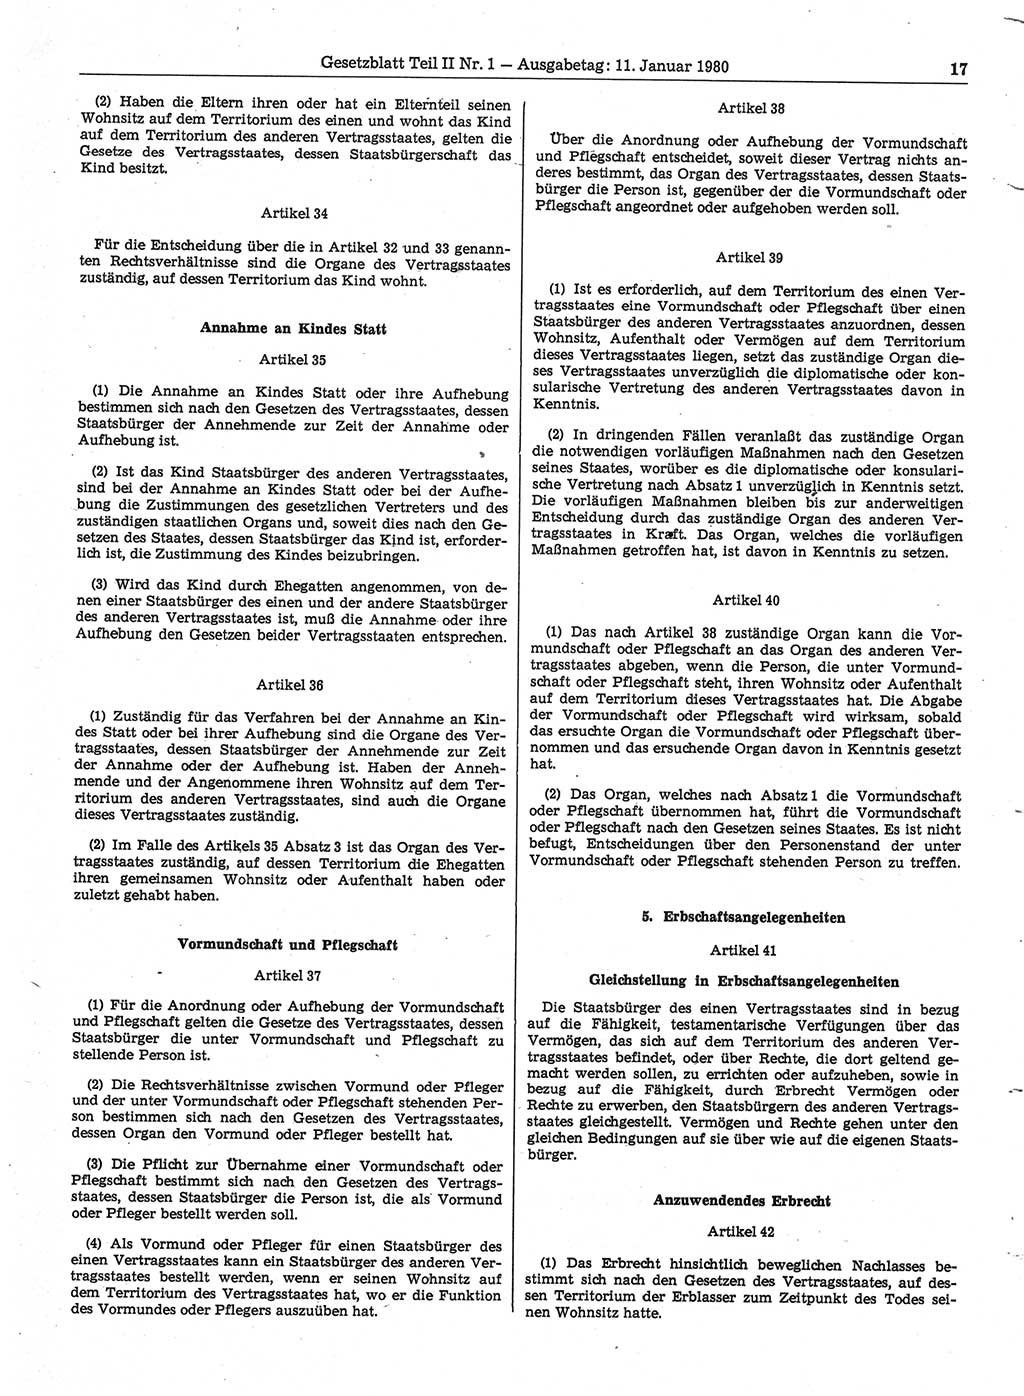 Gesetzblatt (GBl.) der Deutschen Demokratischen Republik (DDR) Teil ⅠⅠ 1980, Seite 17 (GBl. DDR ⅠⅠ 1980, S. 17)